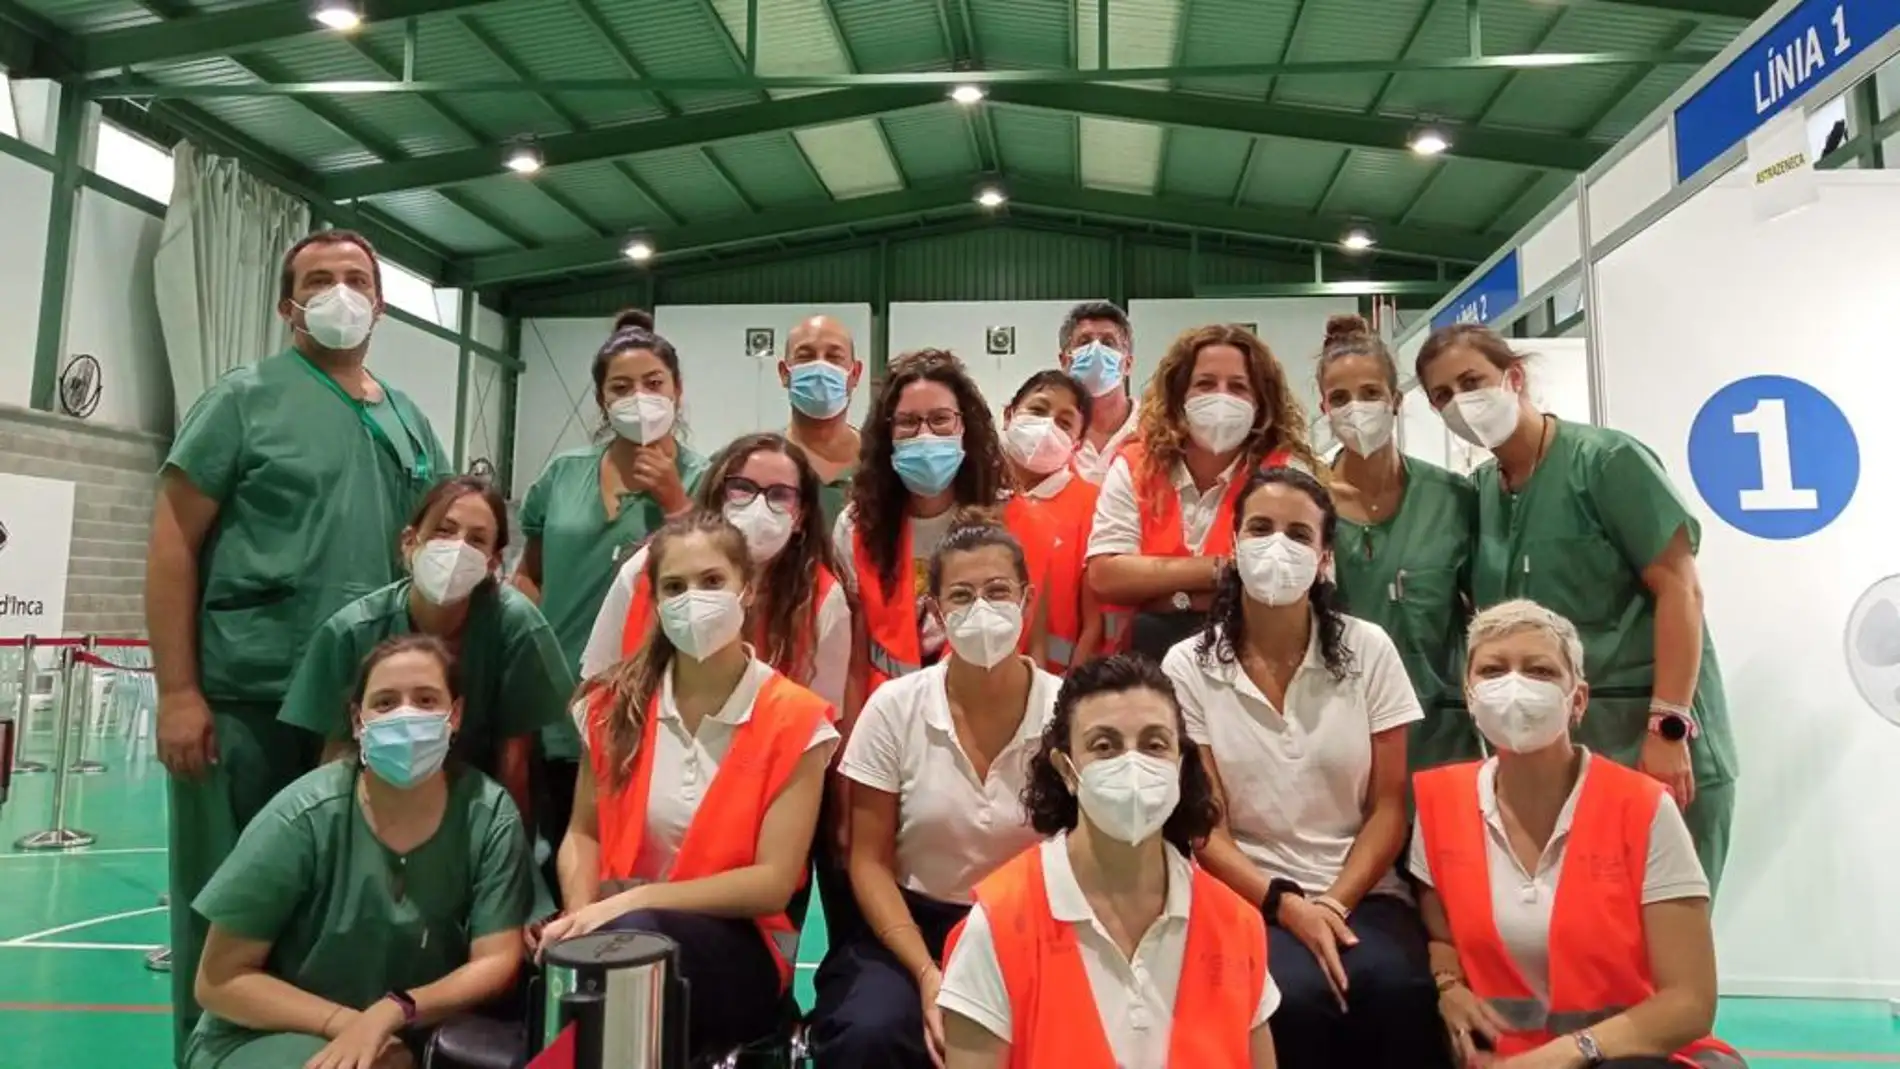 Algunos de los profesionales sanitarios que han trabajado en el centro de vacunación masiva de Inca.